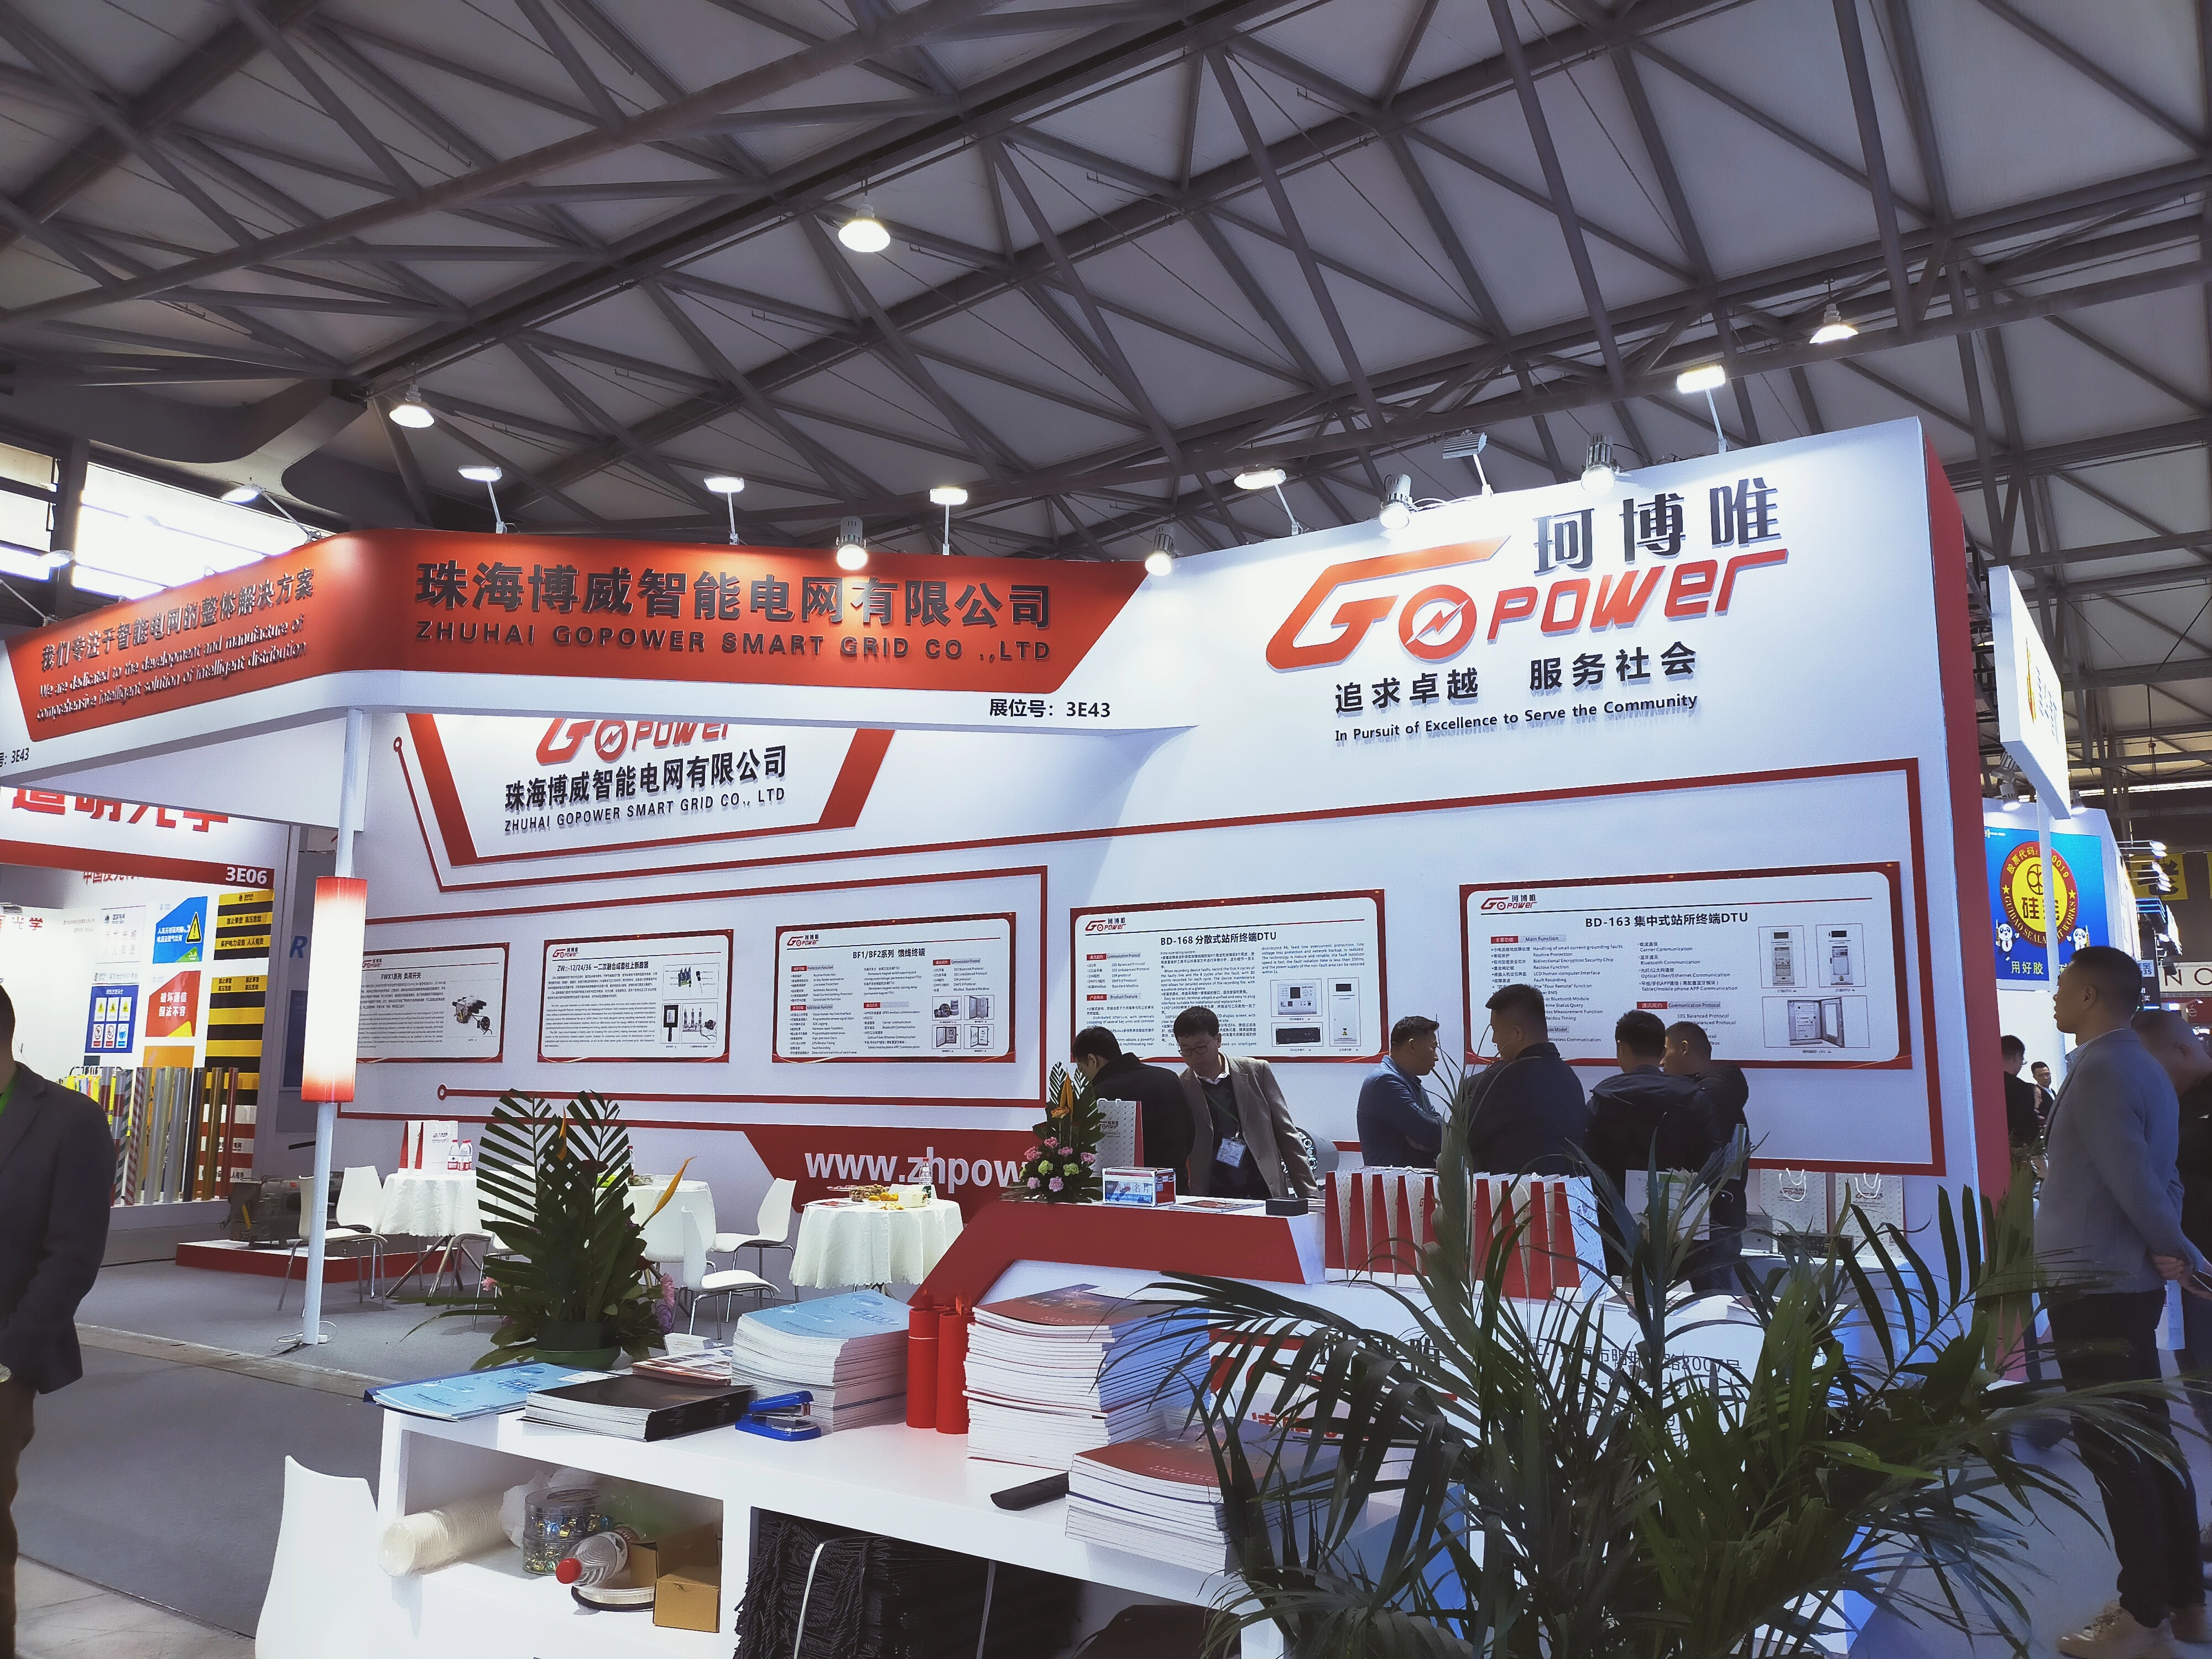 معرض شنغهاي الدولي لمعدات وتكنولوجيا التشغيل الآلي للطاقة الكهربائية